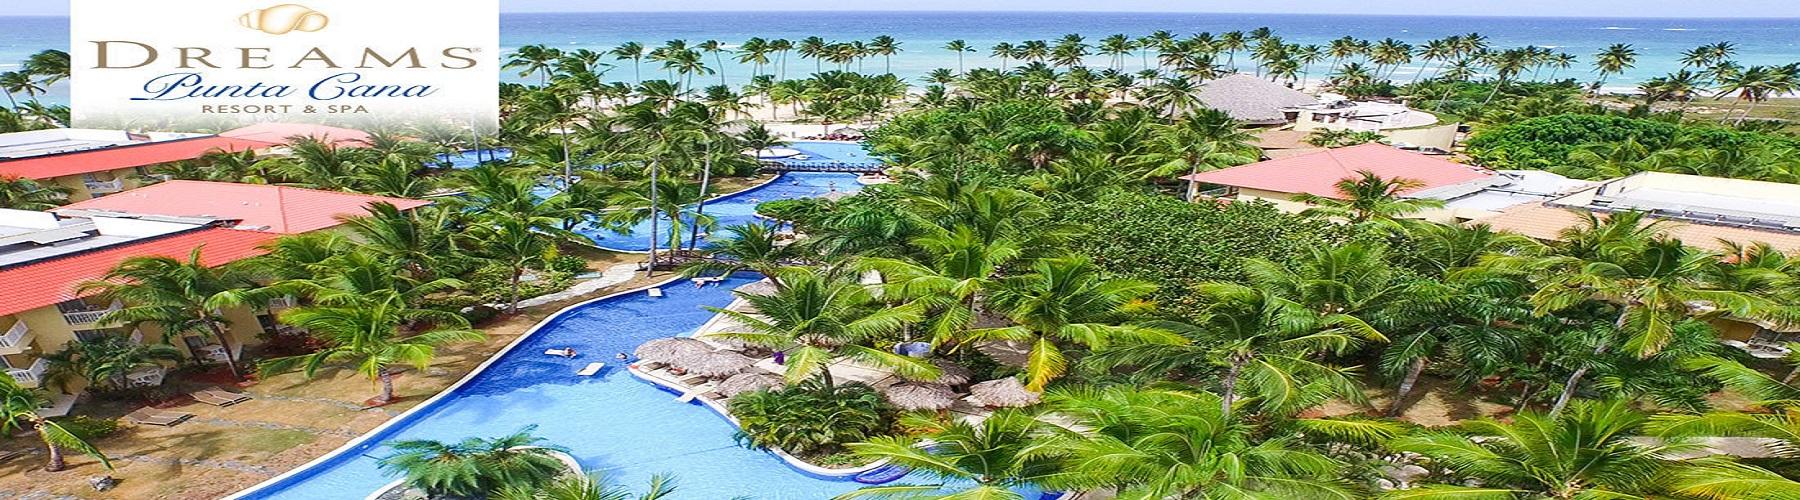 Dreams Punta Cana Resort and Spa 5*